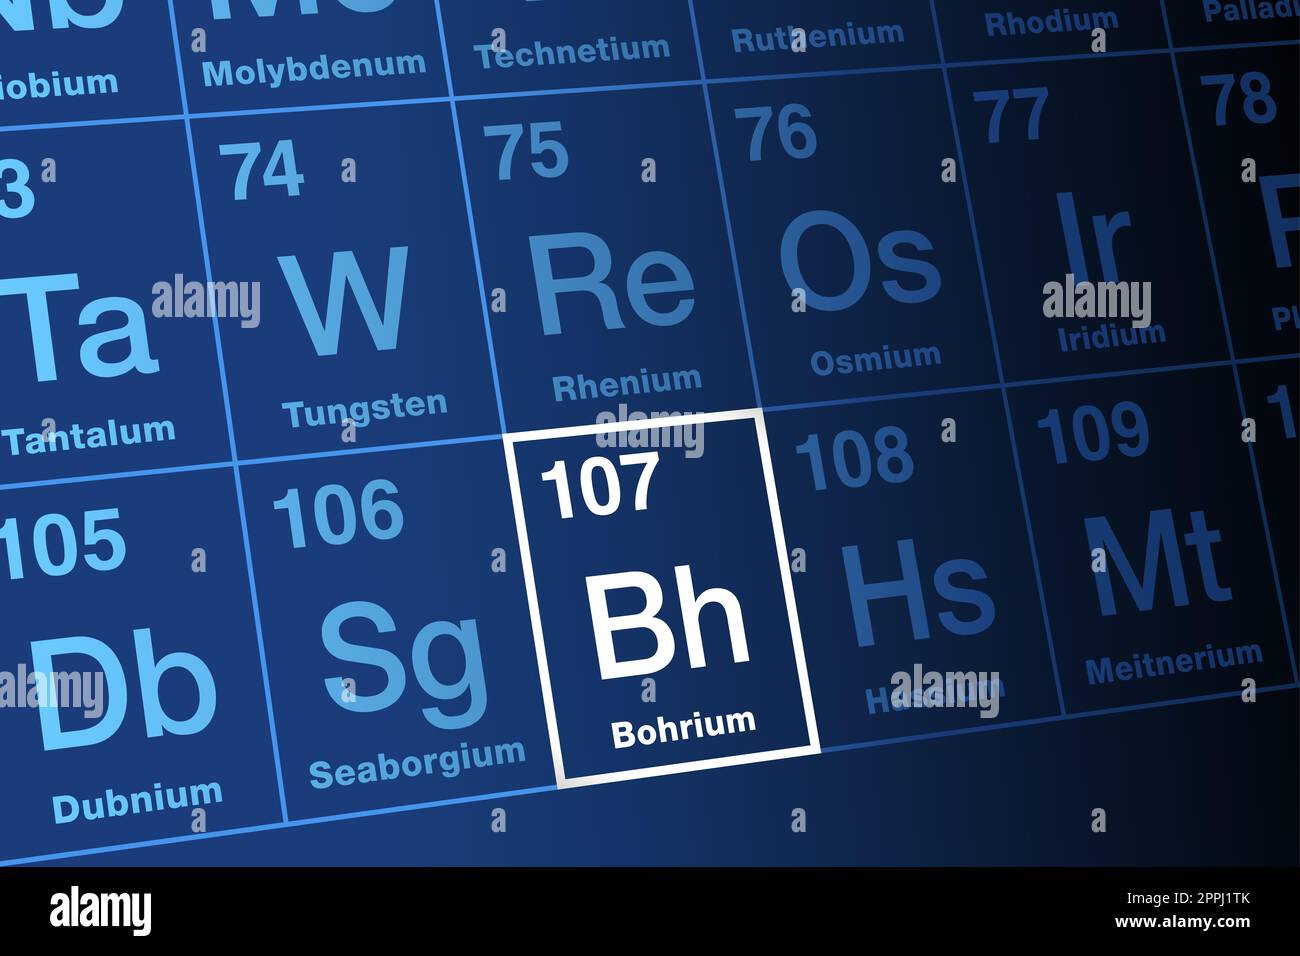 Bohrium, auf dem Periodensystem. Radioaktives, synthetisches Transaktinid-Element, mit Elementsymbol BH und Atomnummer 107. Benannt nach den Niels Bohr. Stockfoto